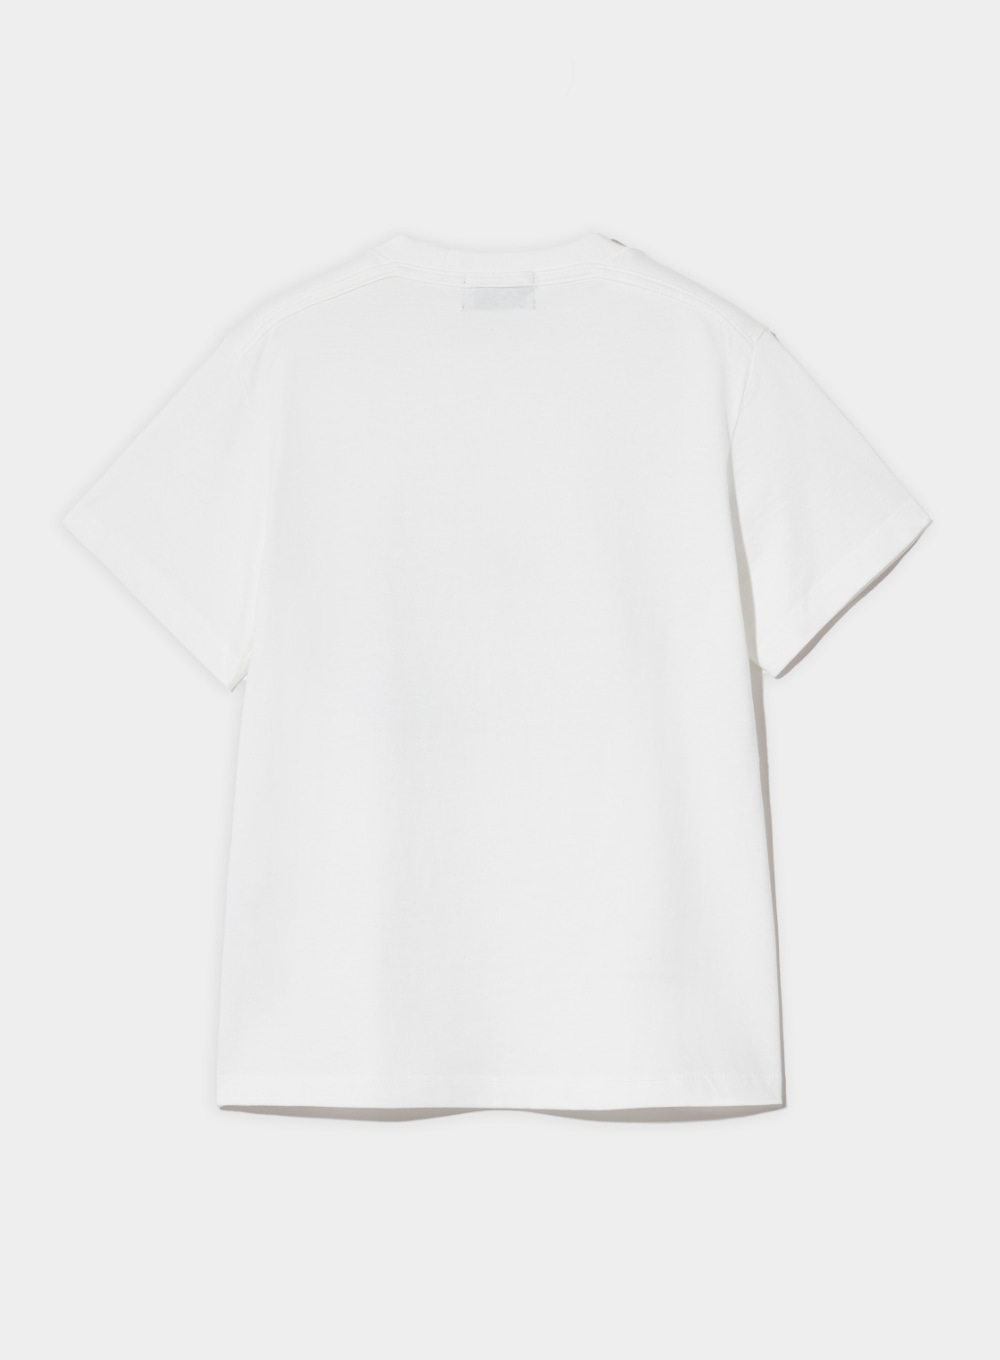 (W) Sailing Graphic T-Shirt - Clean White